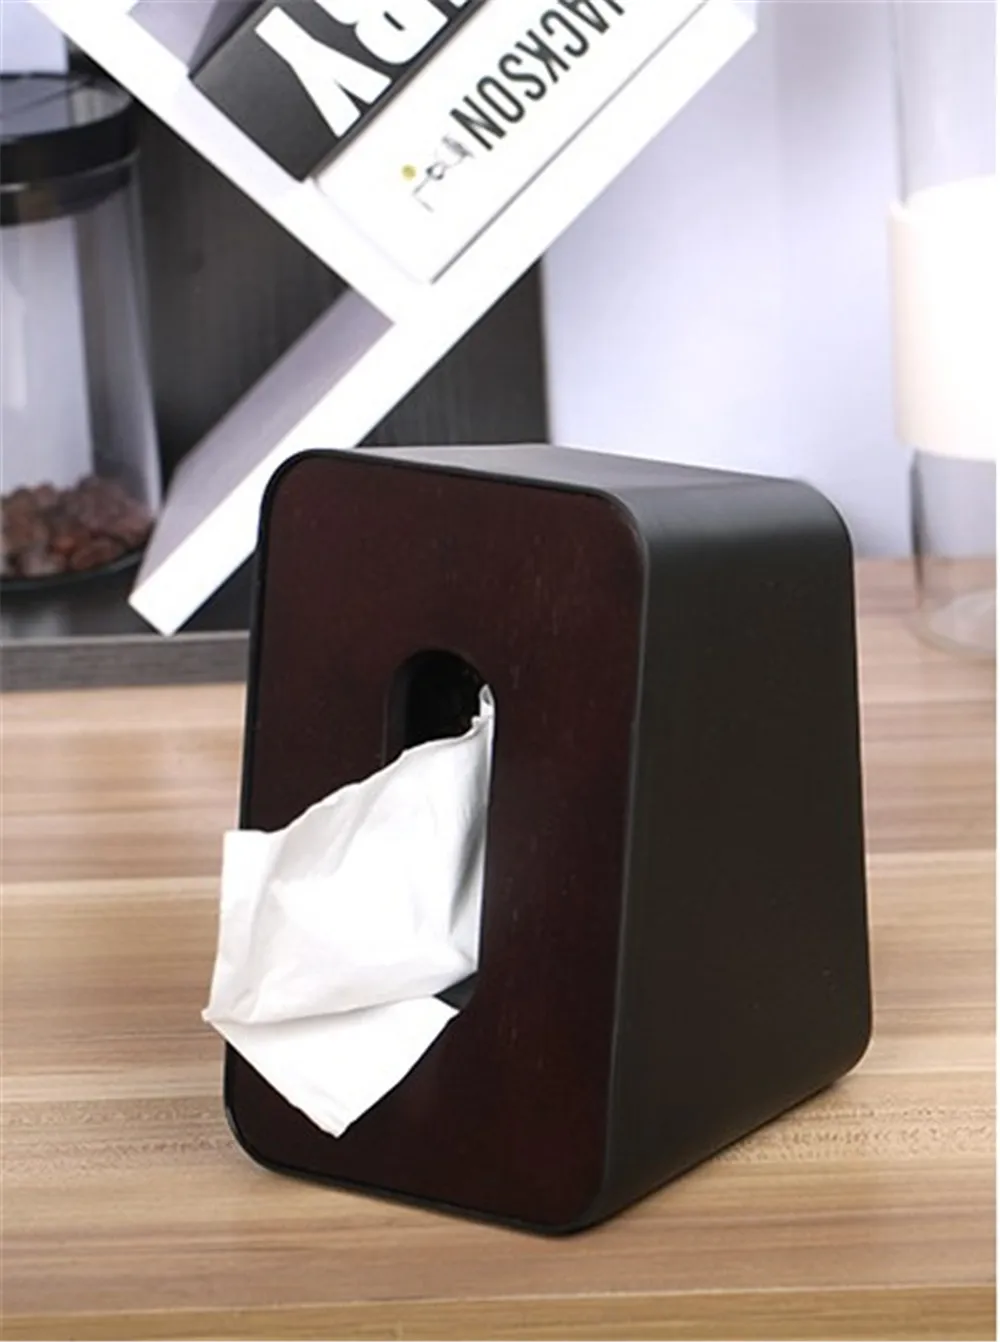 Скандинавском стиле деревянный чехол Вертикальная коробка для салфеток съемное устройство подачи бумажных салфеток кухонный держатель для салфеток чехол для хранения домашнего декора стола